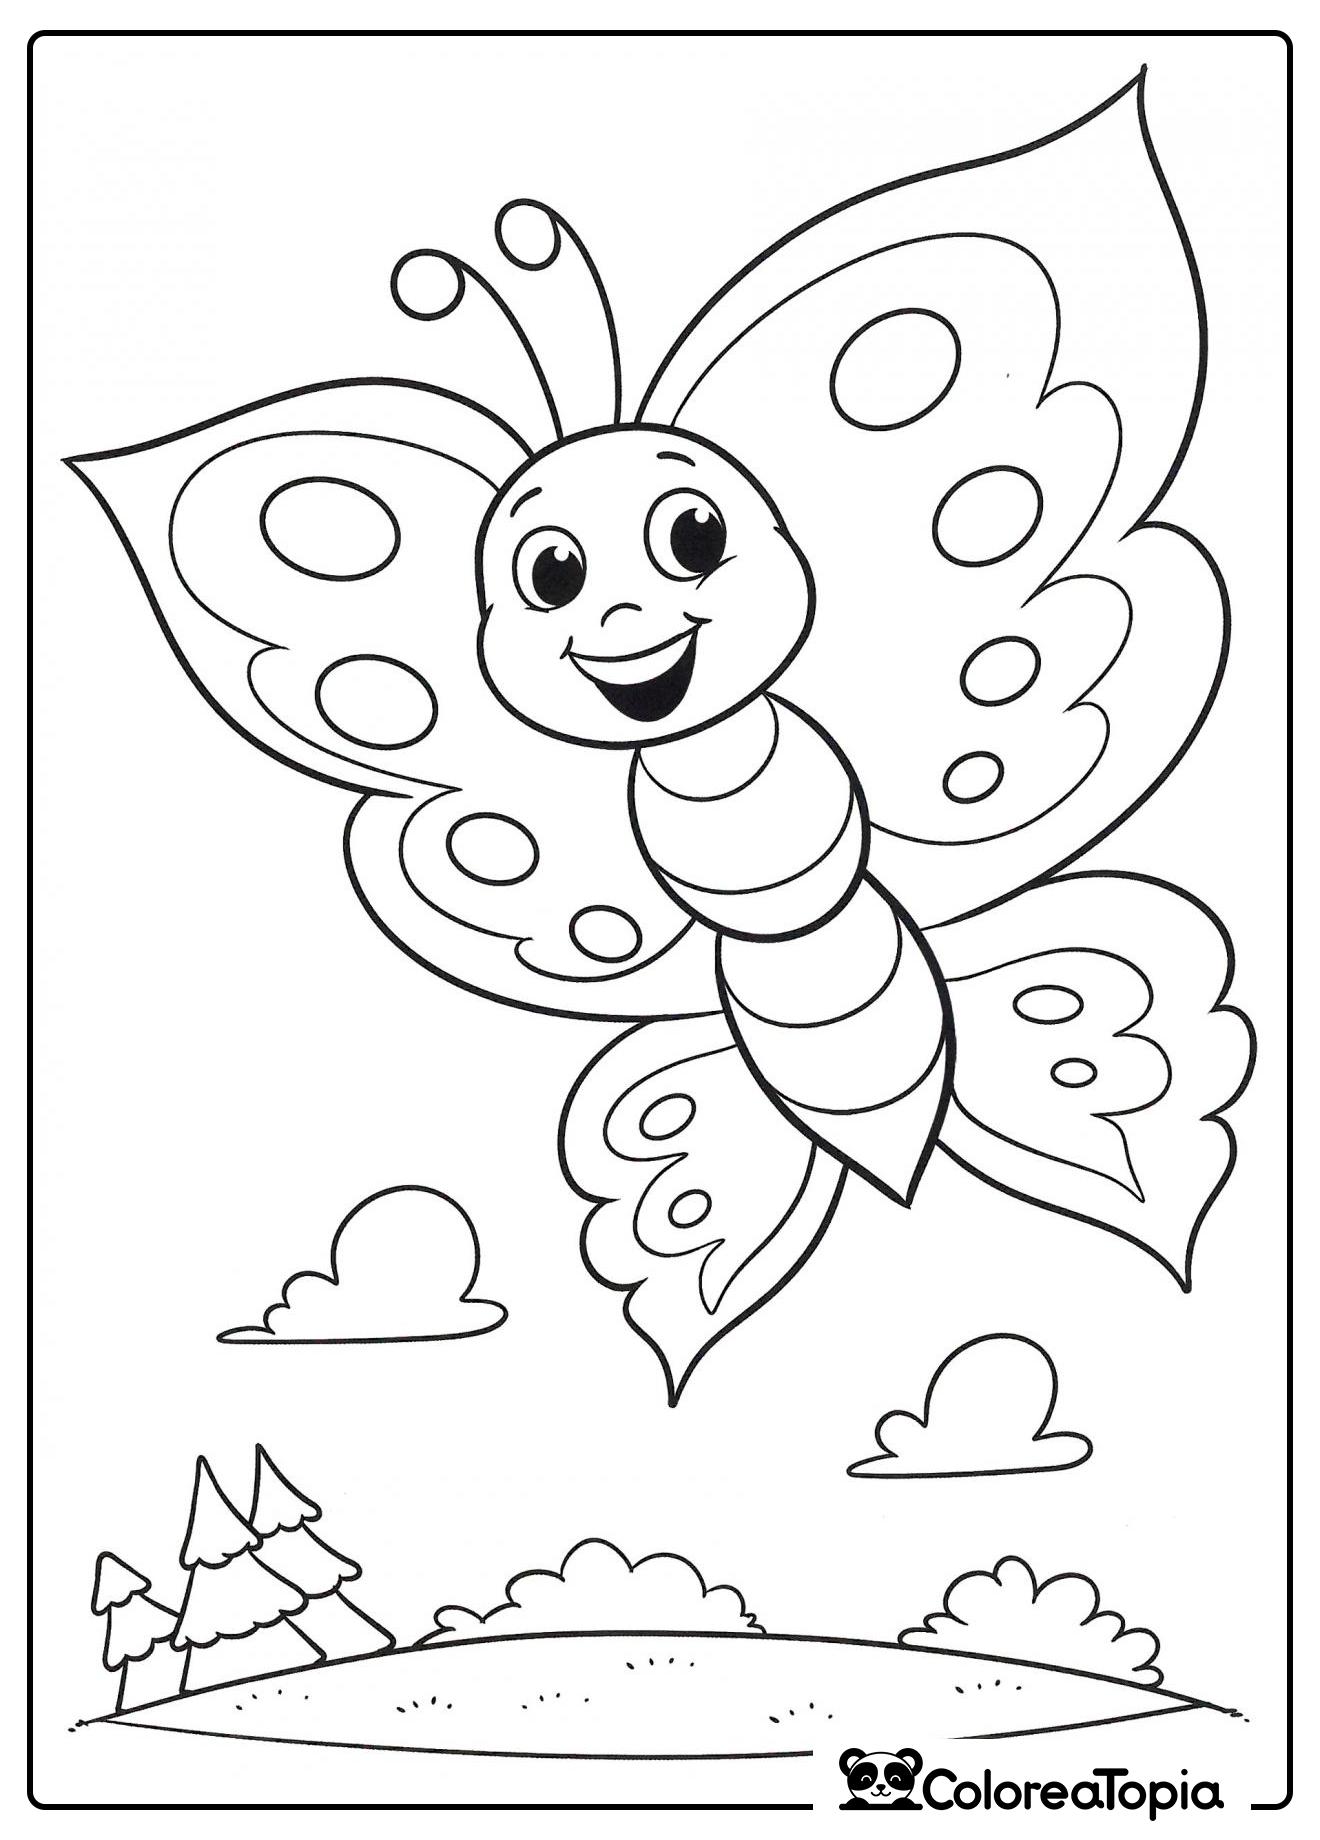 La mariposa vuela sobre el bosque - dibujo para colorear